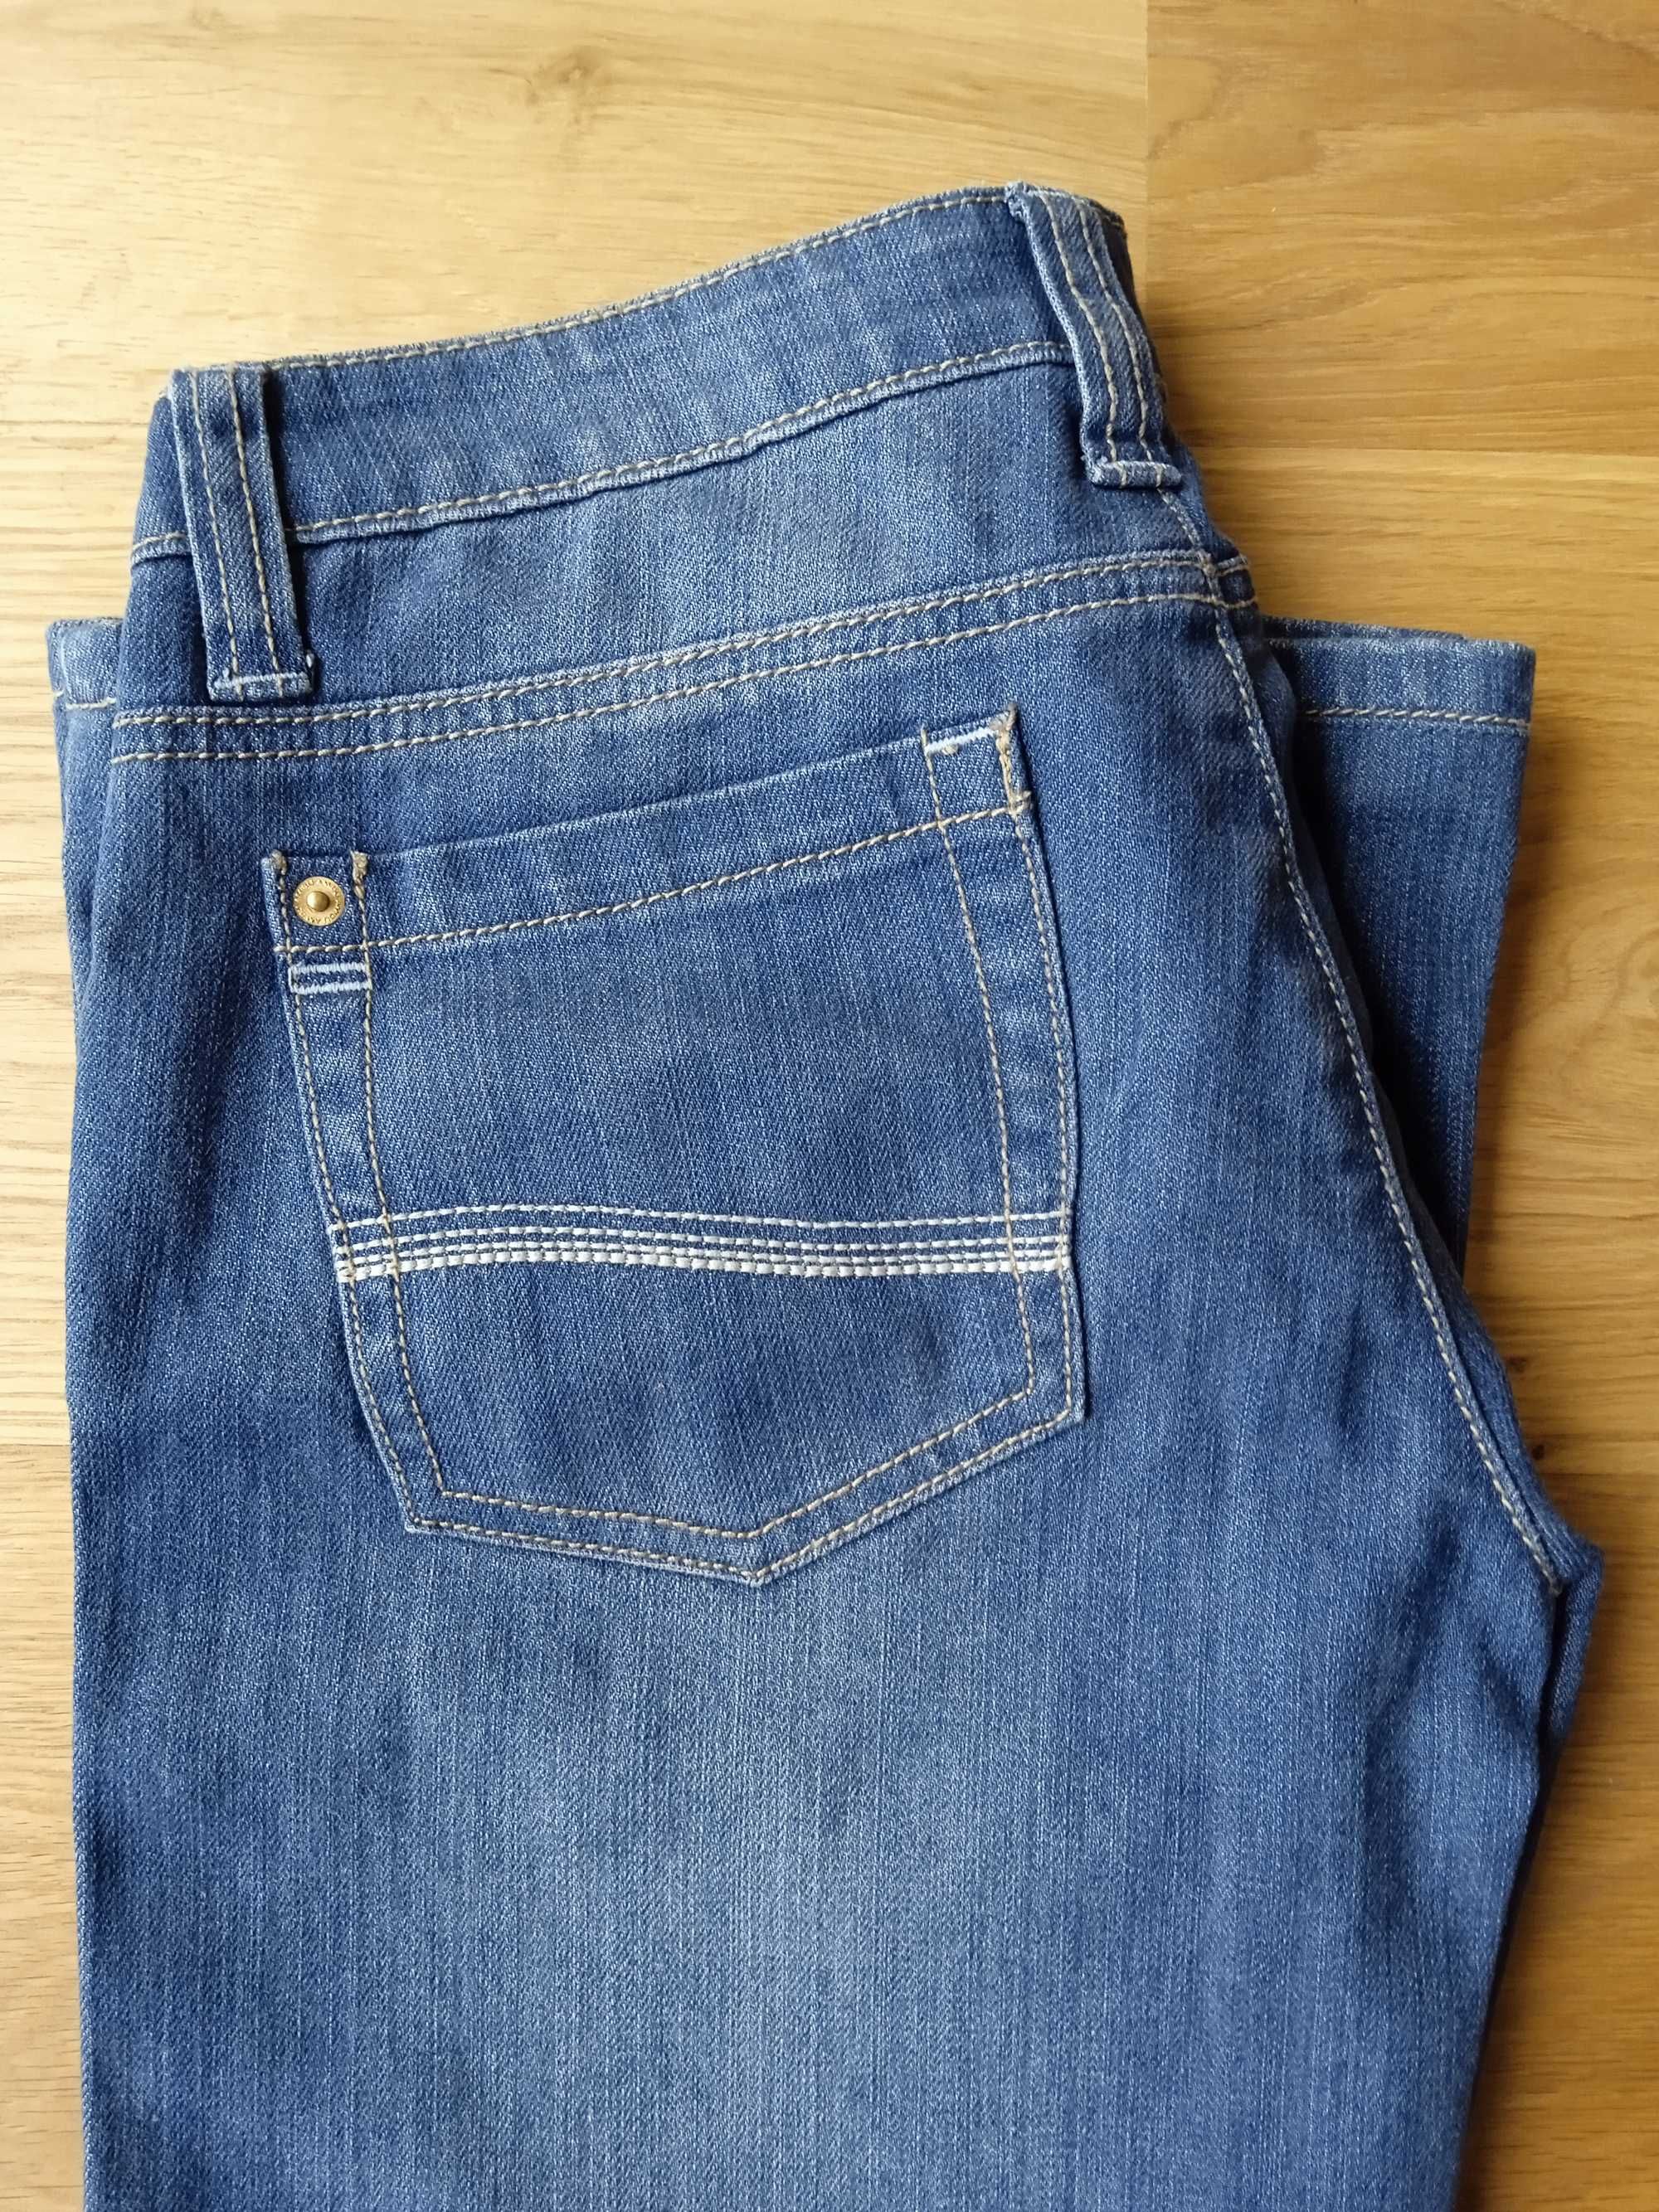 Spodnie BOOTCUT jeans rozszerzane nogawki niski stan, dzwony